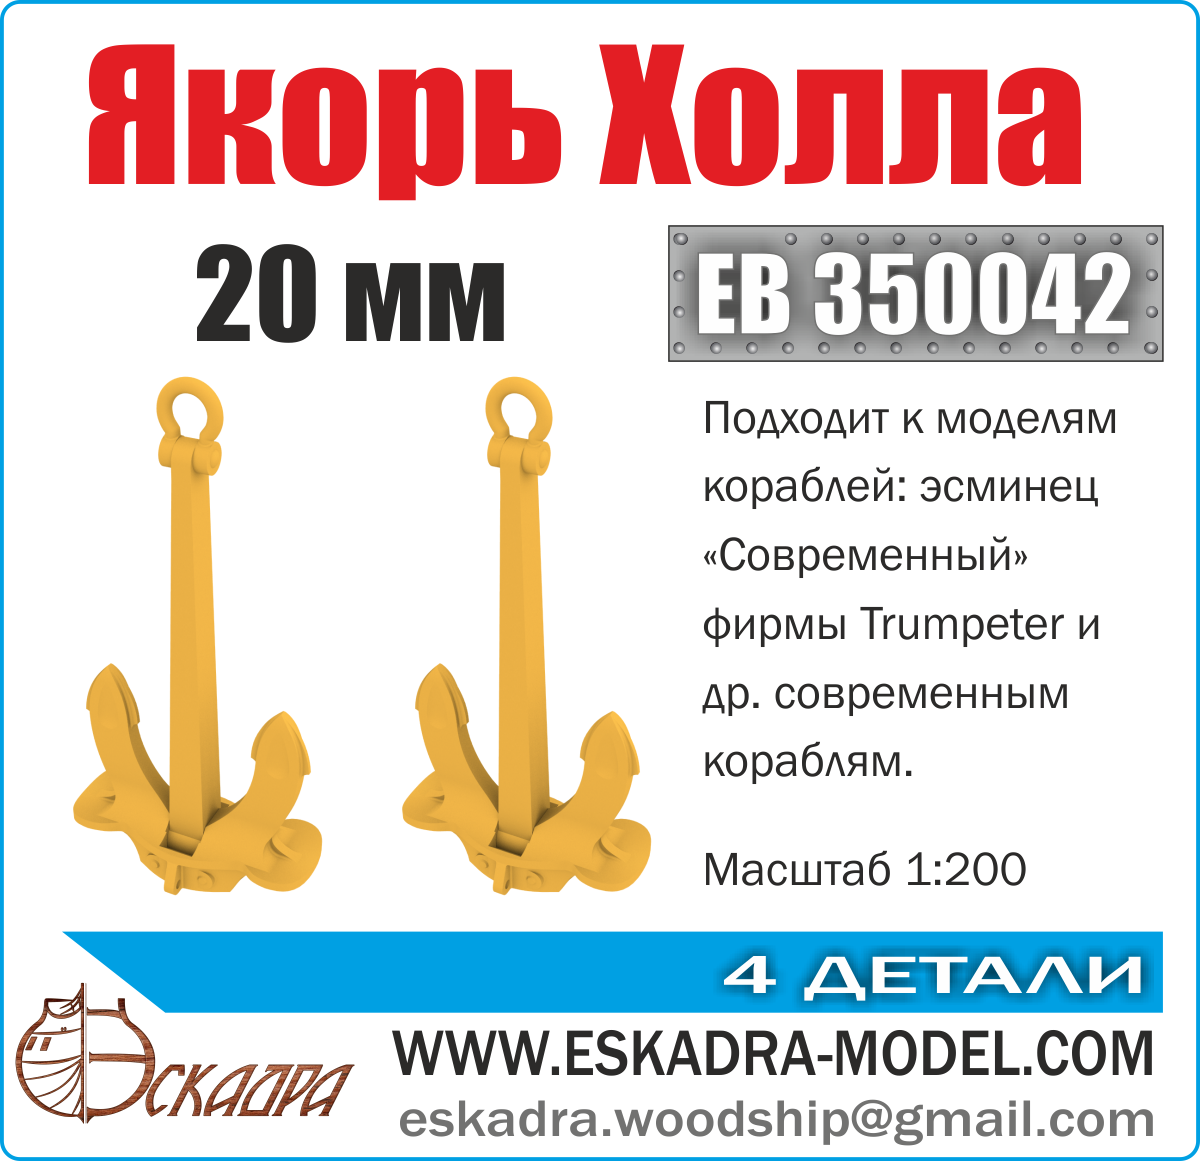 ЕВ350042  дополнения из металла  Якорь Холла  20 мм (уп. 2 шт)  (1:200)